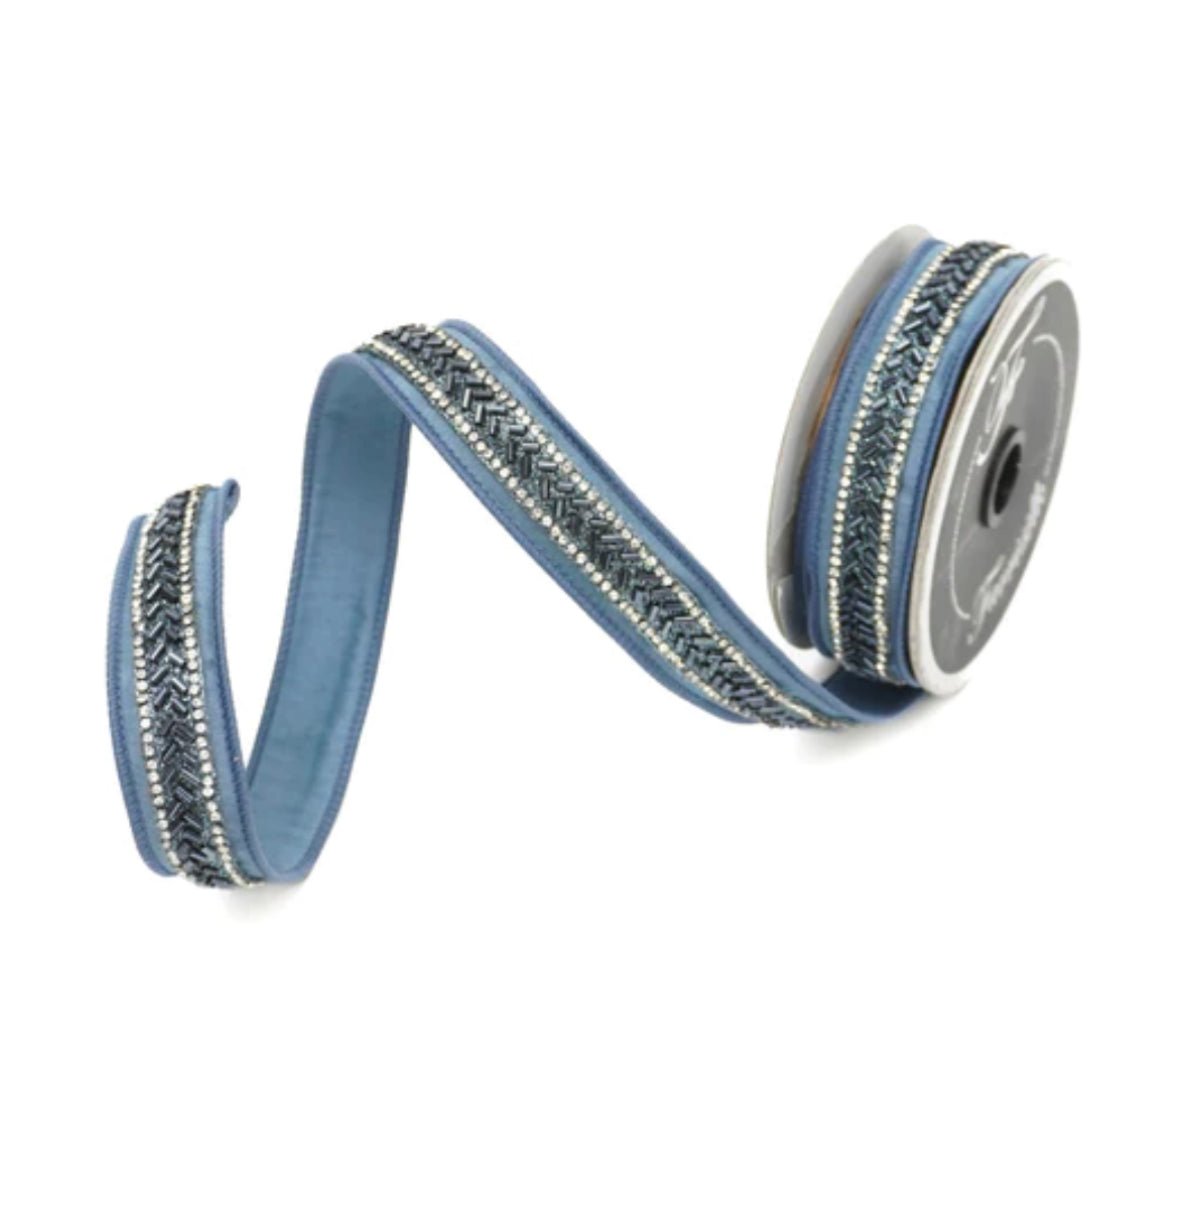 Farrisilk Luxury 1.25 x 5 yd Pear Shaped Jewels in Dusty Blue Wired Ribbon